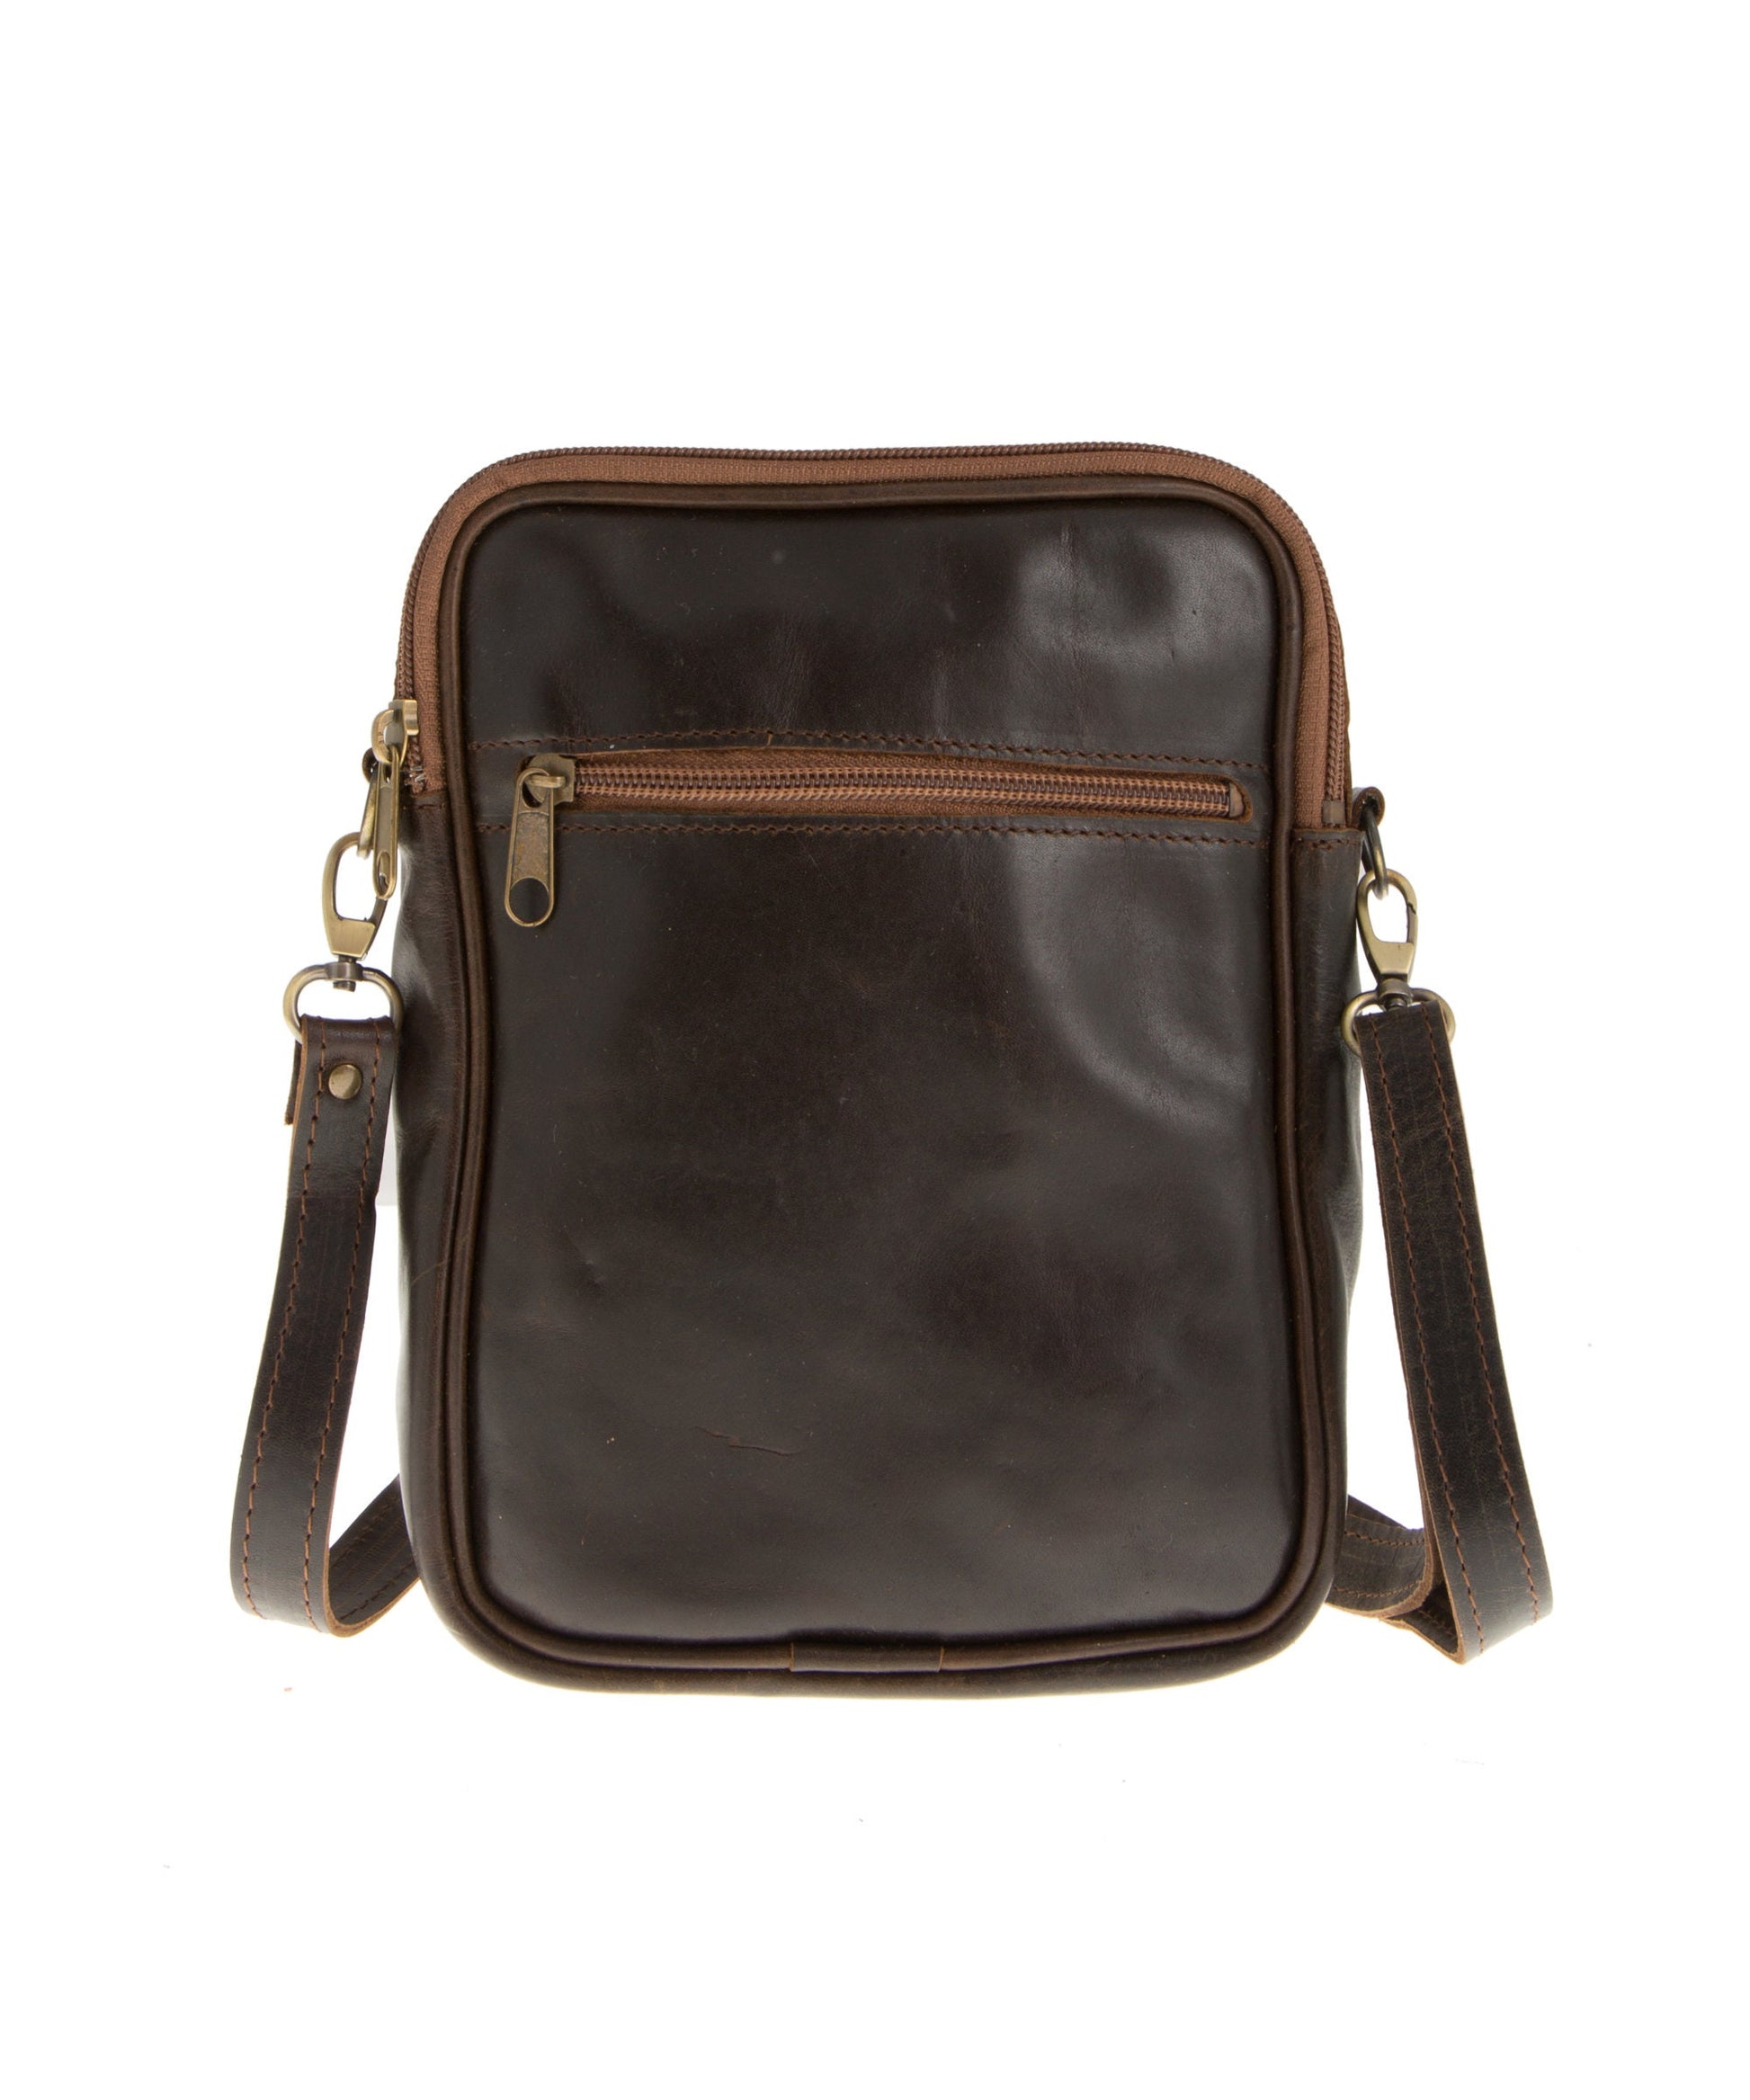 Full grain leather crossbody bag for men, Leather bag men, Leather shoulder bag, Men leather accessories